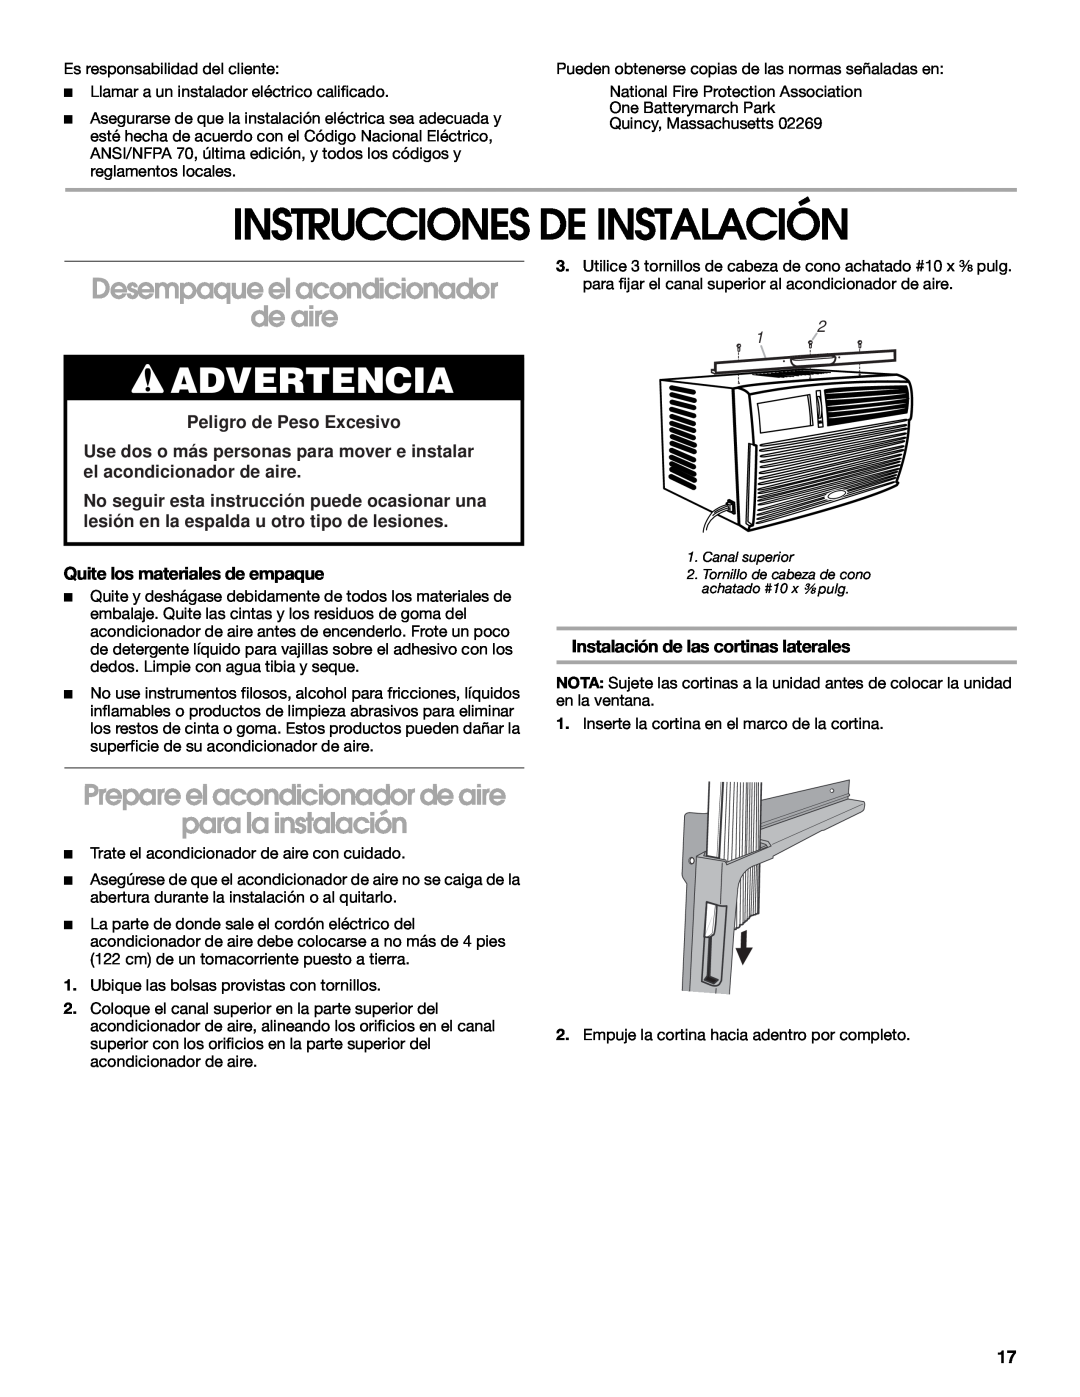 Whirlpool CA10WXP0 manual Instrucciones De Instalación, Desempaque el acondicionador, Prepare el acondicionador de aire 